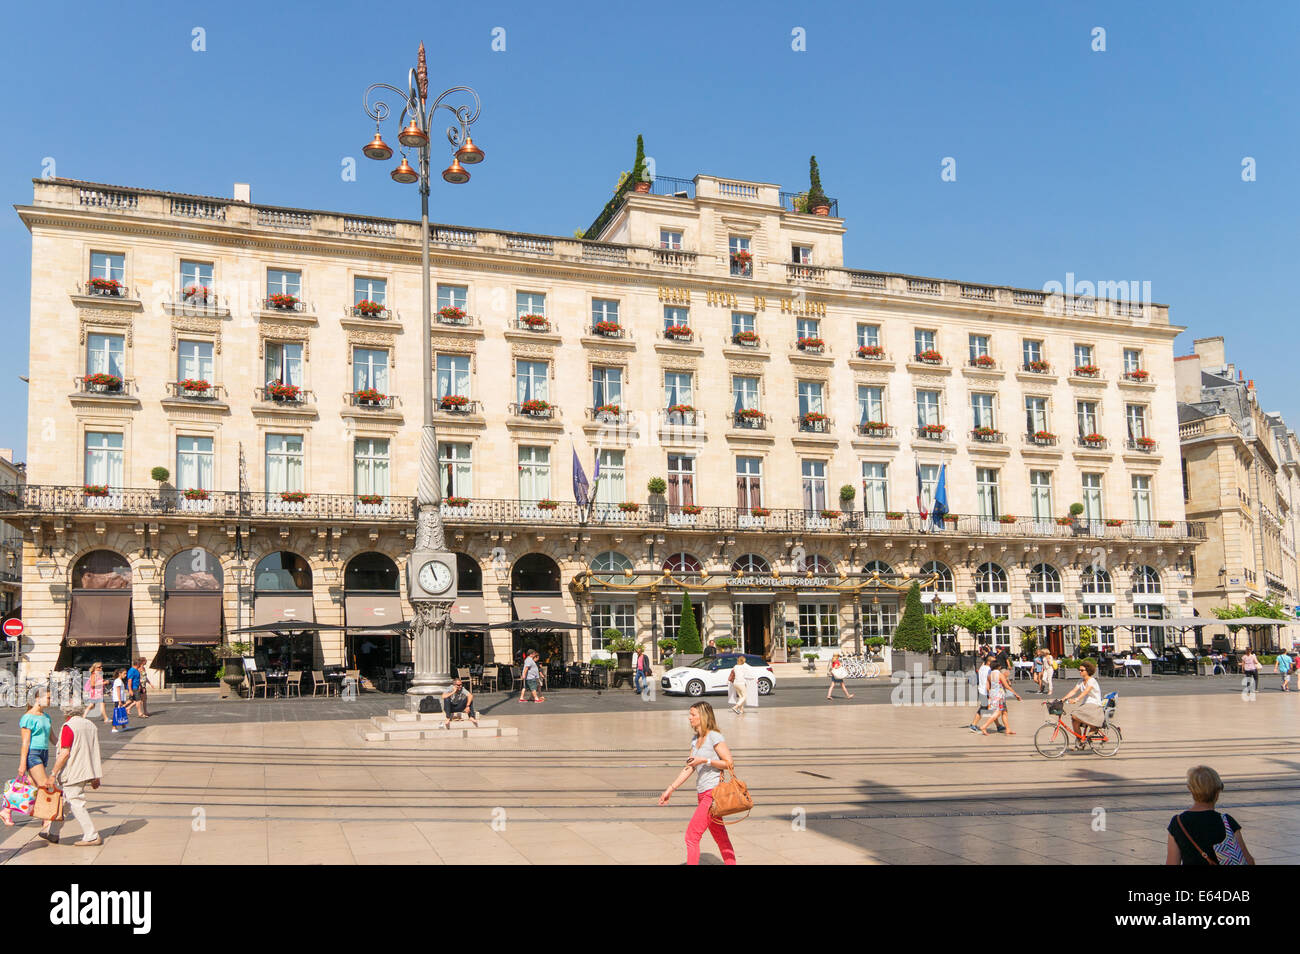 The Grand Hotel de Bordeaux, Place de la Comédie, Bordeaux,  Gironde, France, Europe Stock Photo